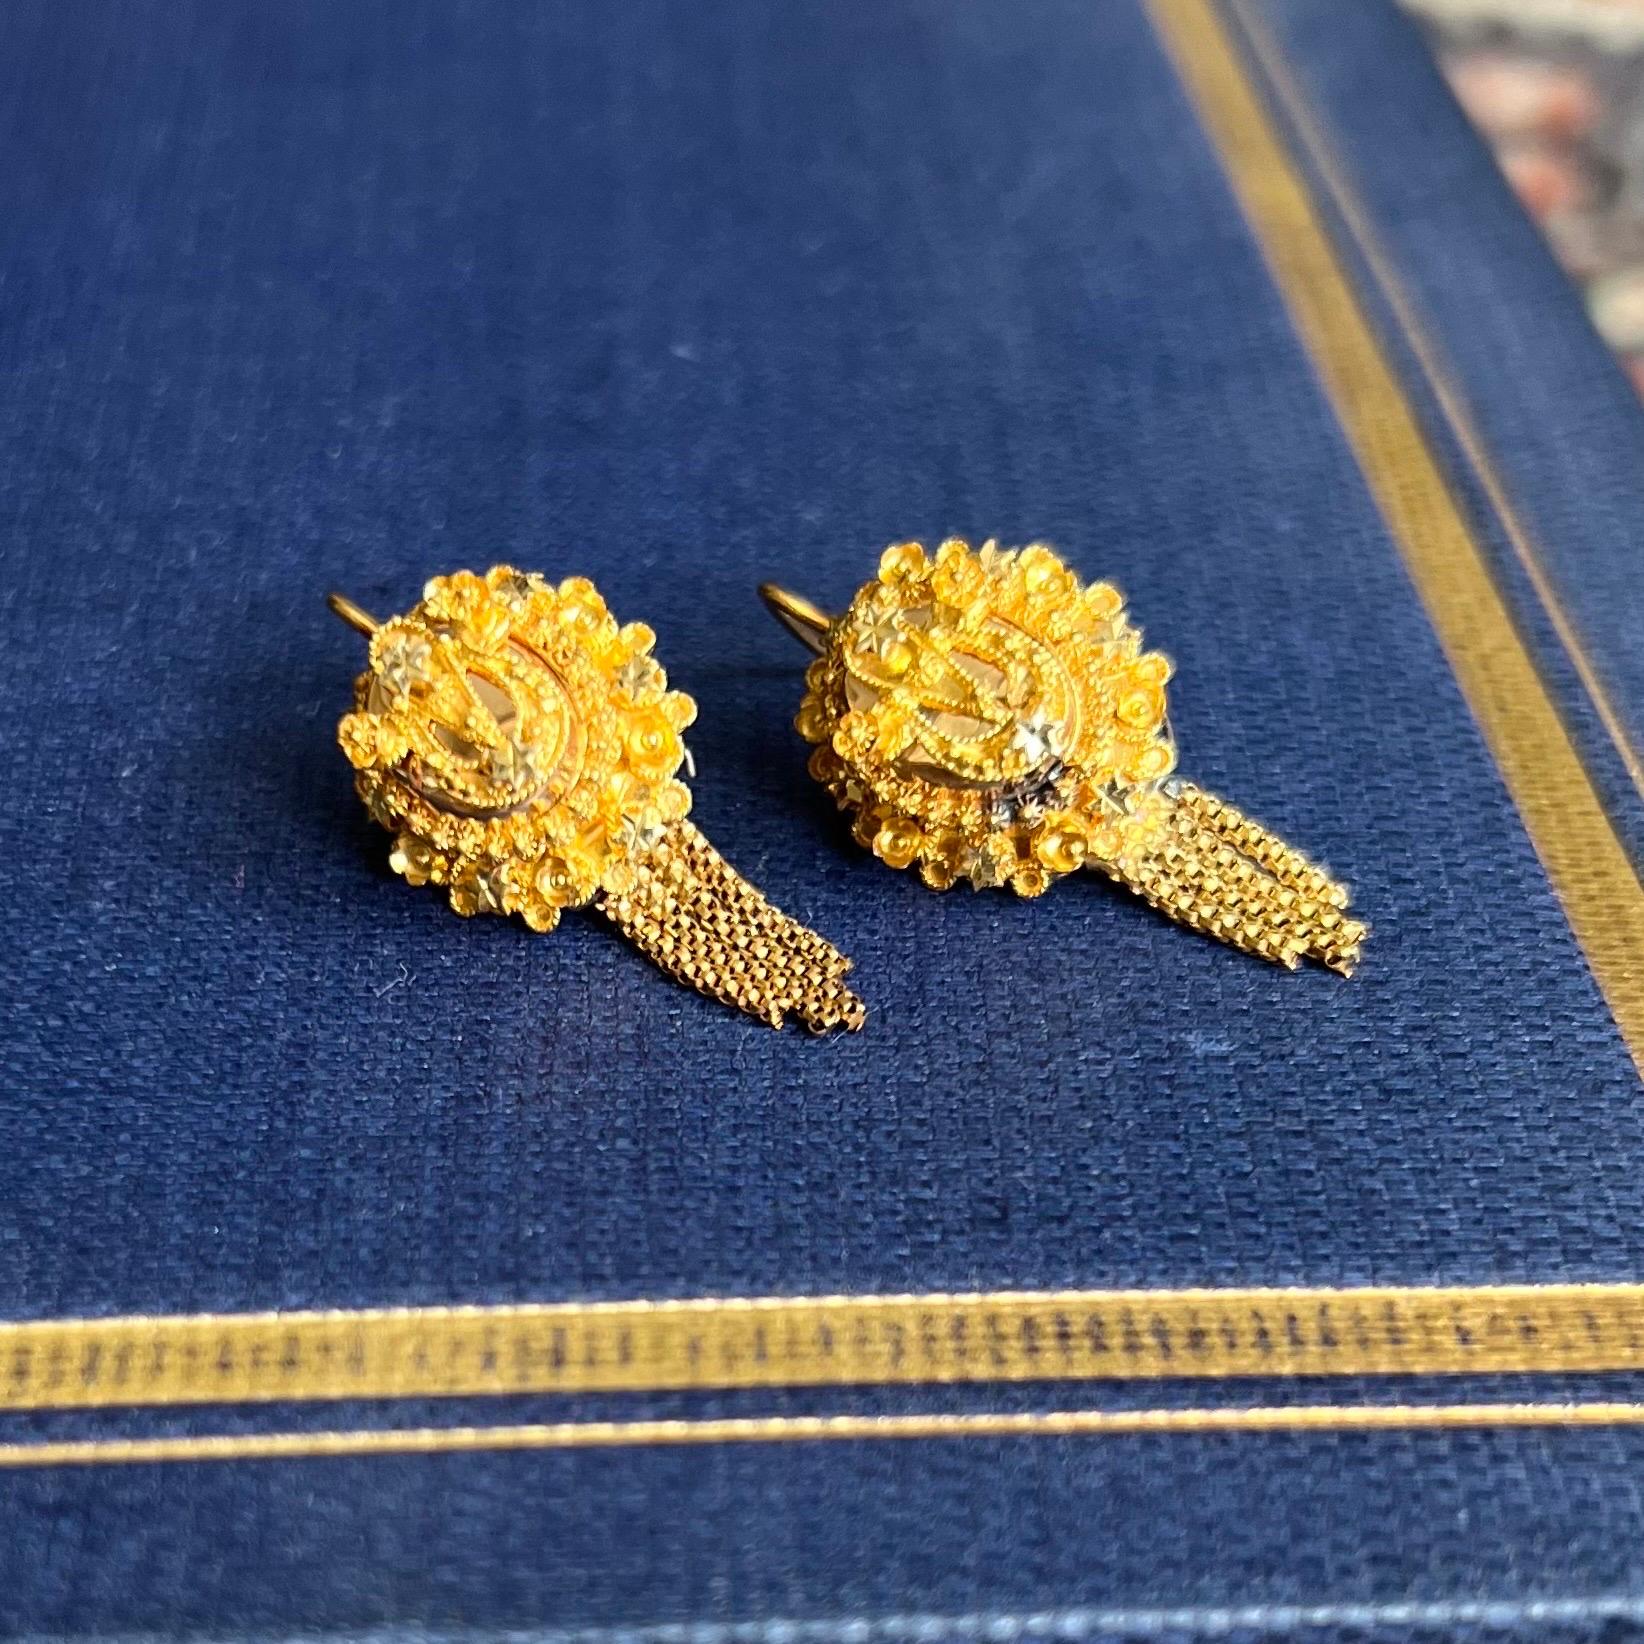 Diese antiken Ohrringe aus 14 Karat Gelbgold sind mit feiner Cannetille-Arbeit und baumelnden Quasten versehen. Die Ohrringe sind sehr gut von Hand mit Cannetille gemacht. Jeder Ohrring hat vier Quasten unterhalb der Spitze, die diese schönen